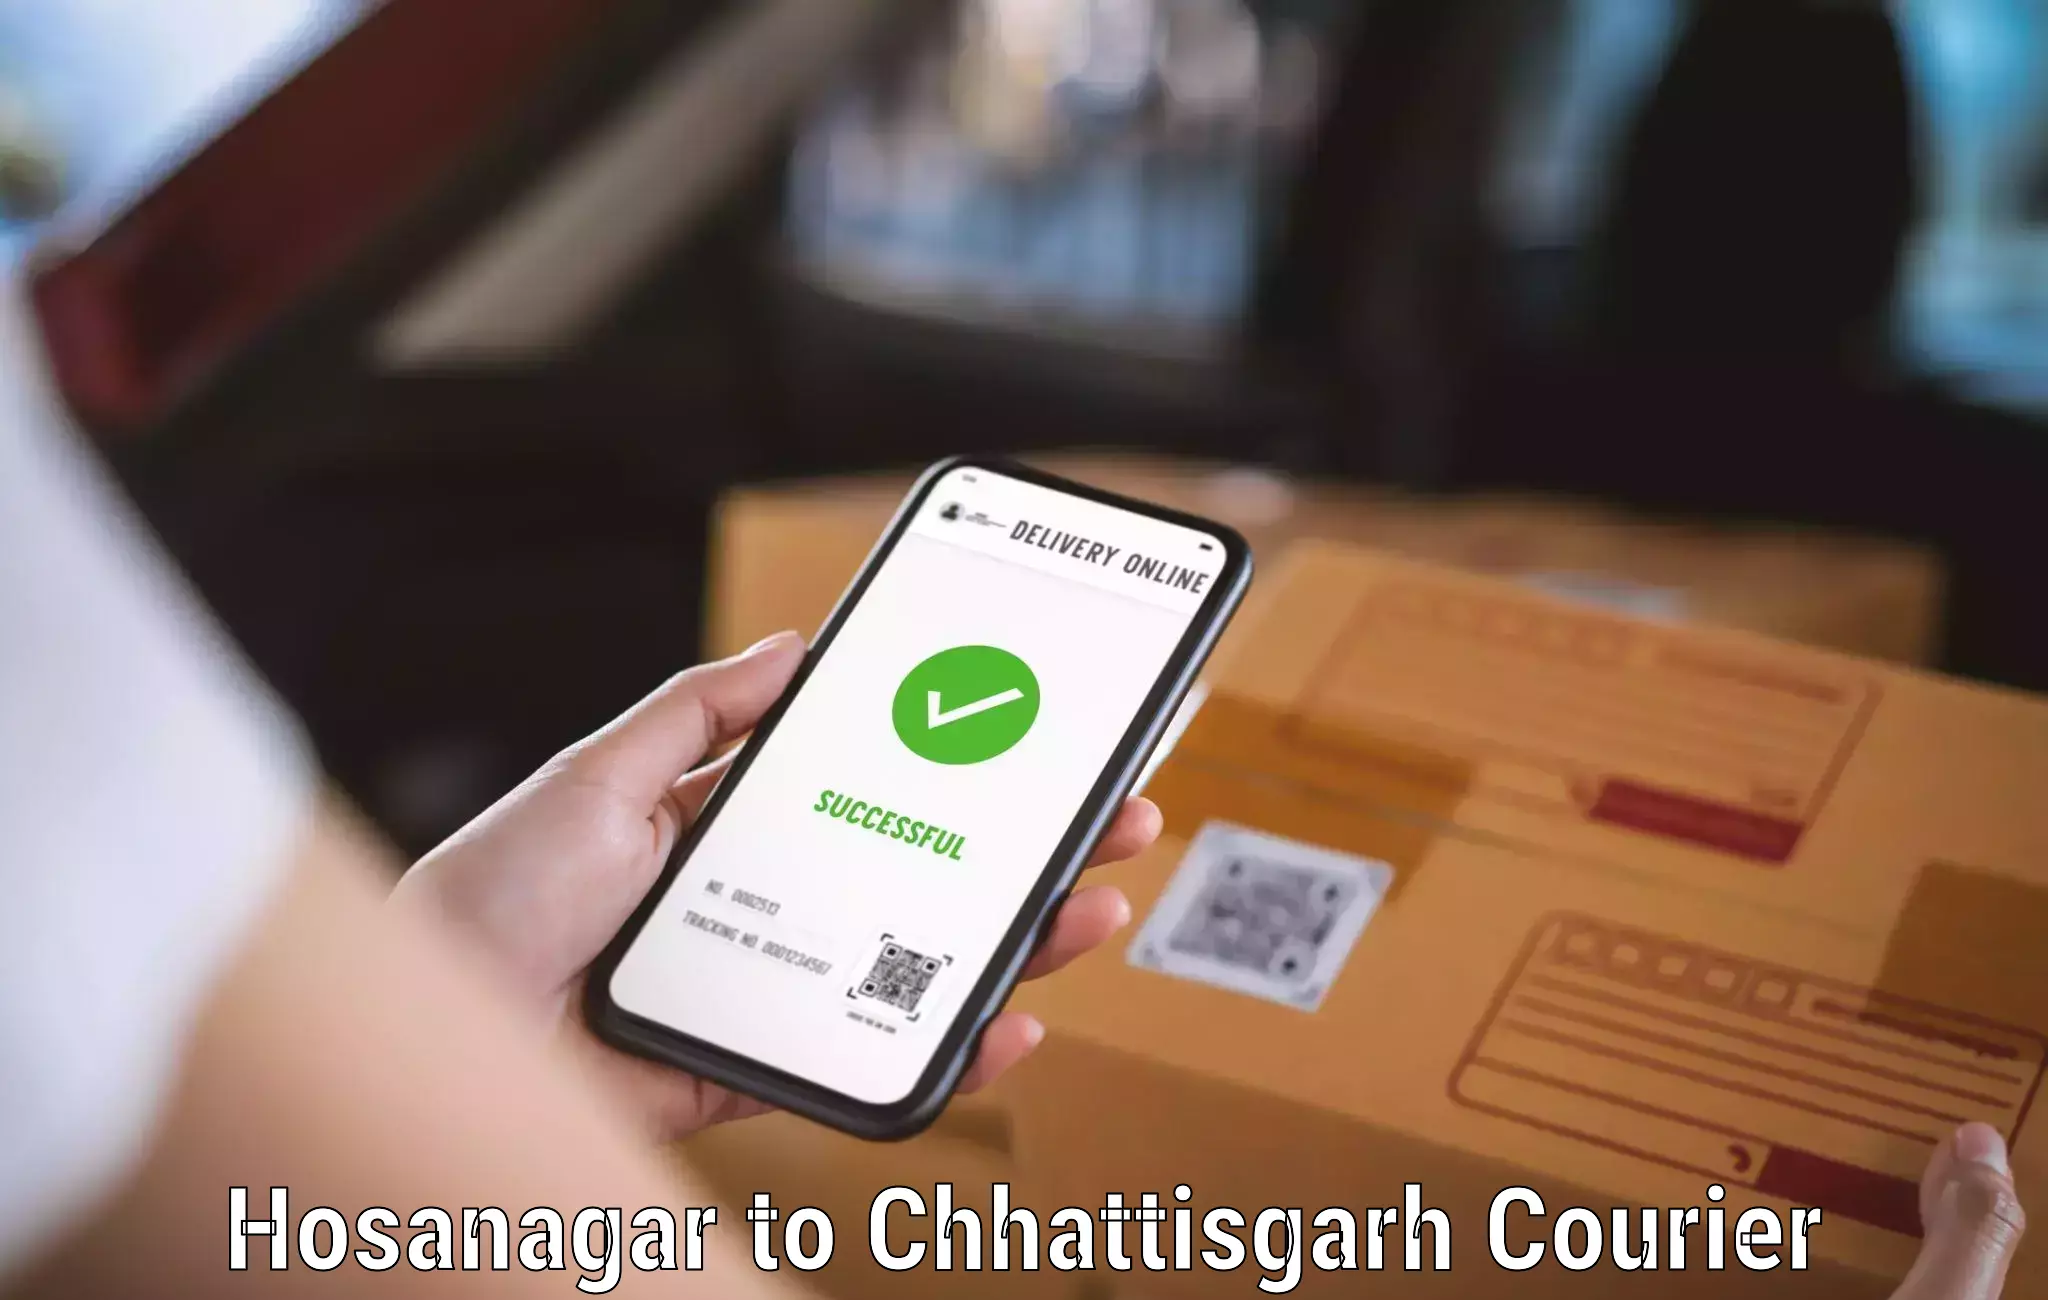 Business courier solutions Hosanagar to Mandhar